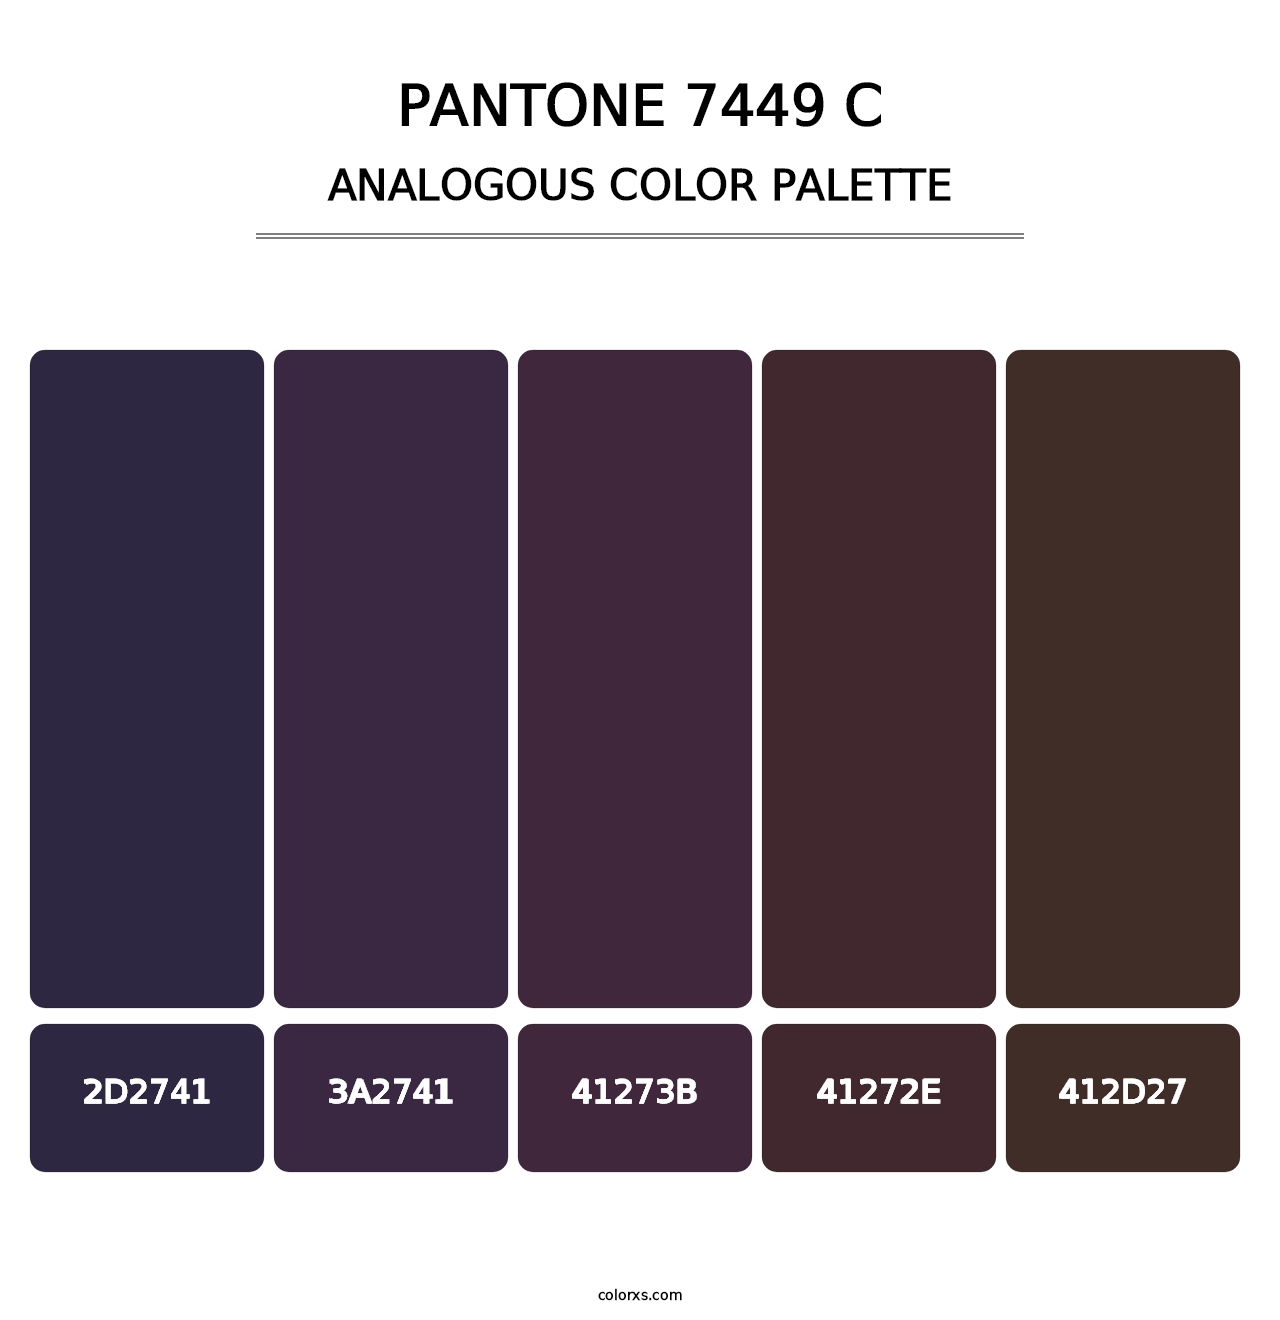 PANTONE 7449 C - Analogous Color Palette